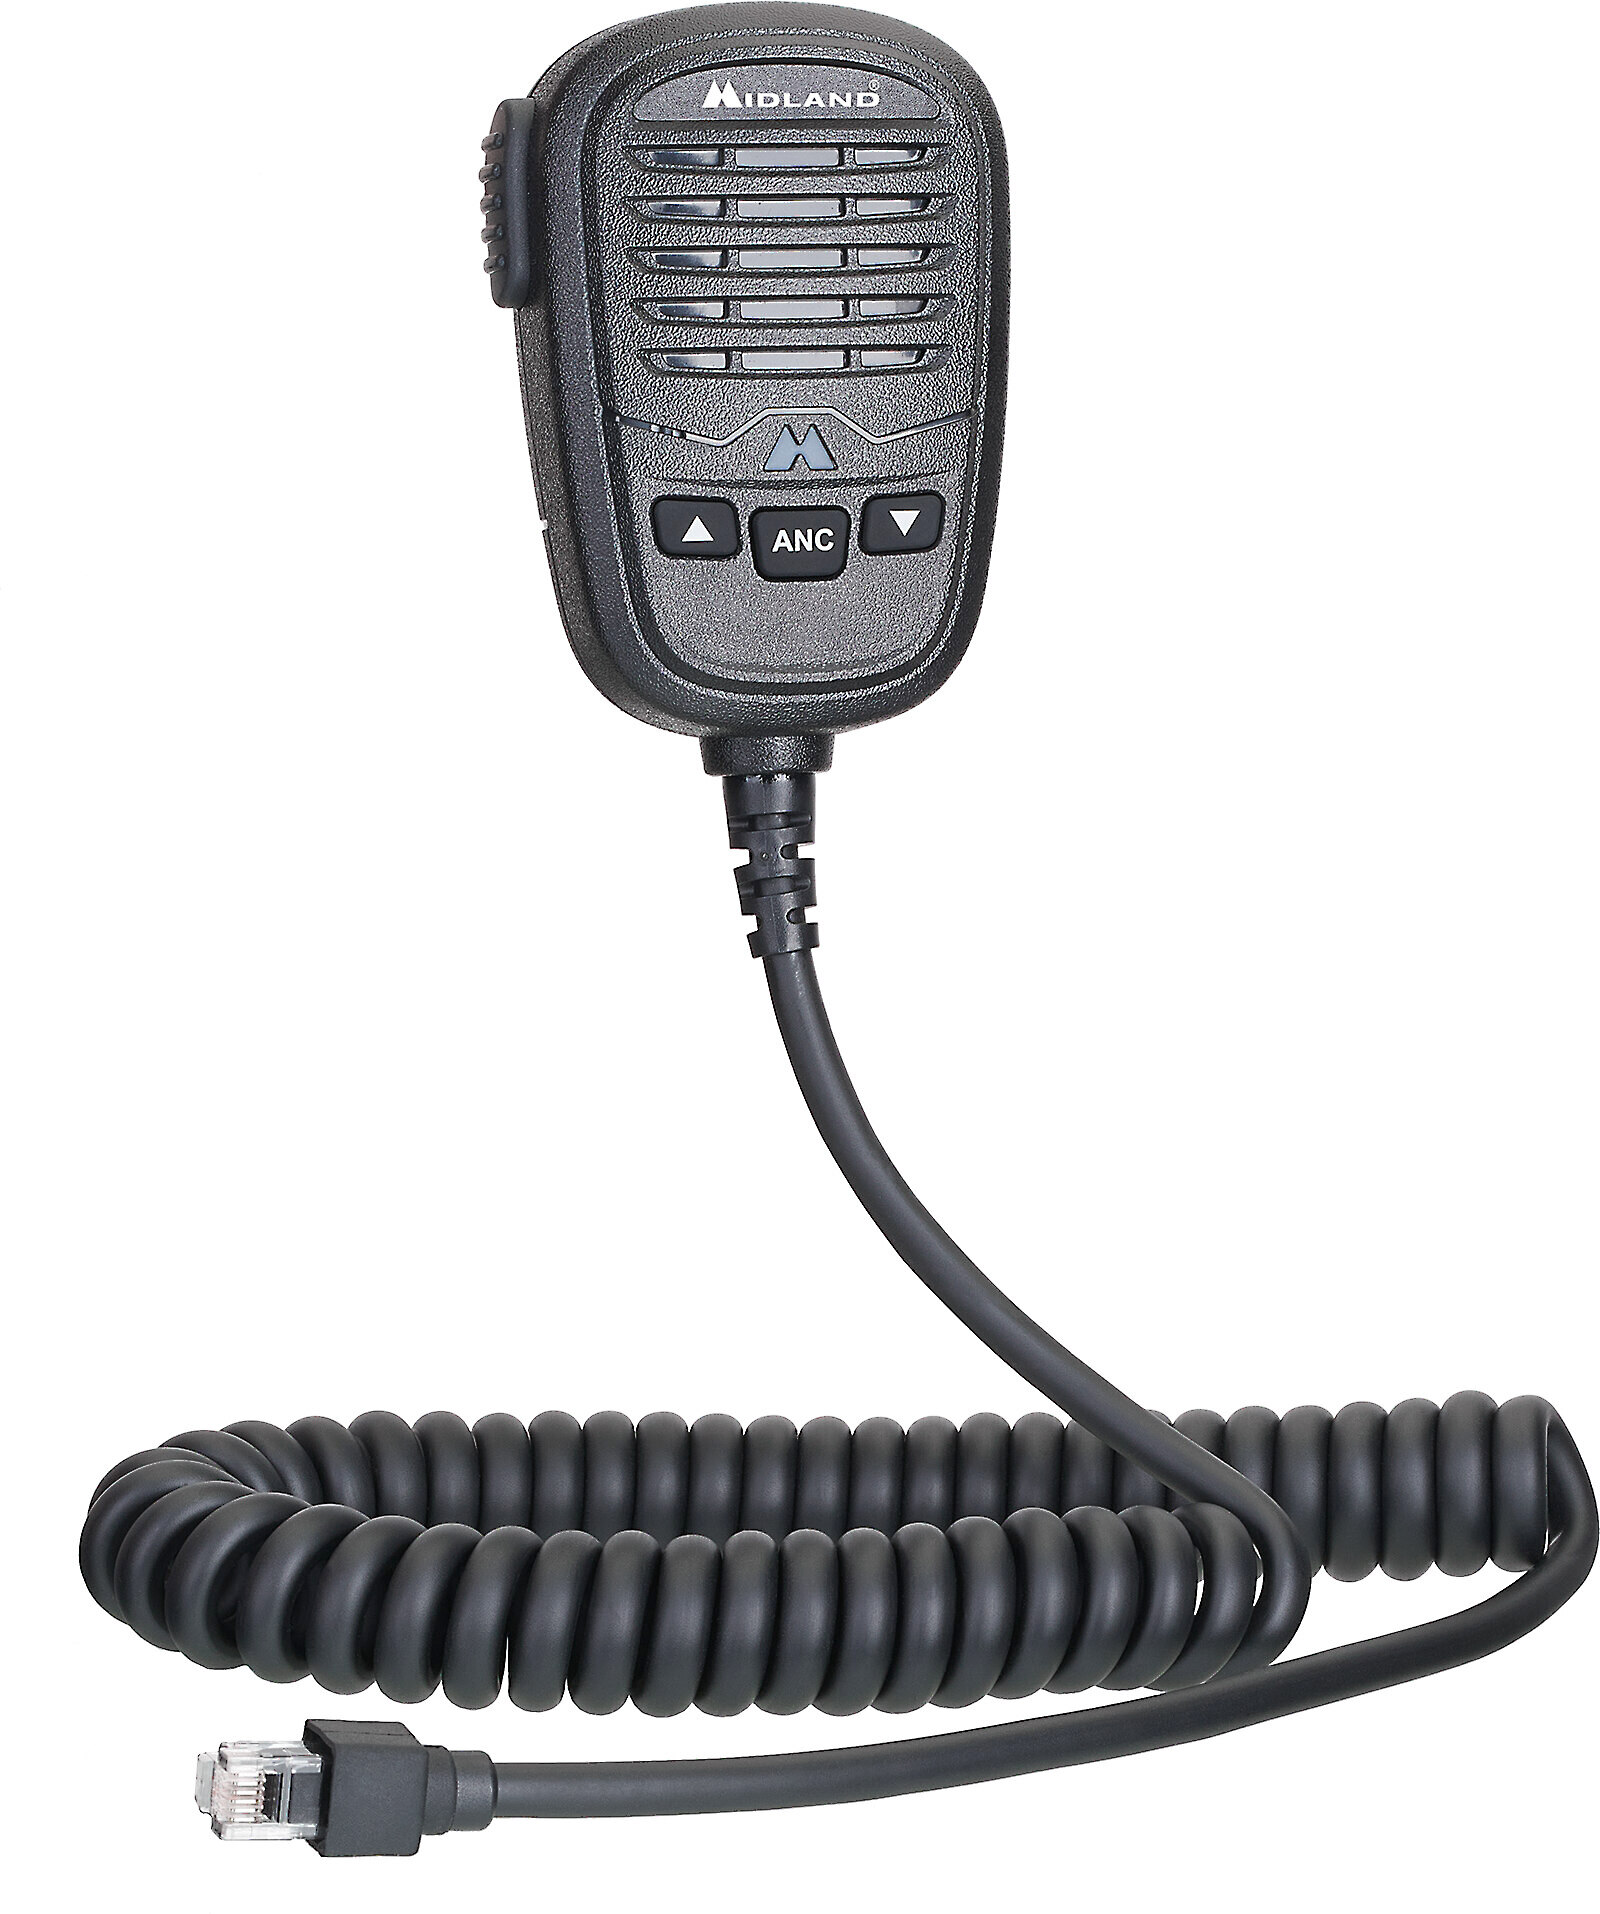 MB400 DAB Radio with Bluetooth Speaker - Black